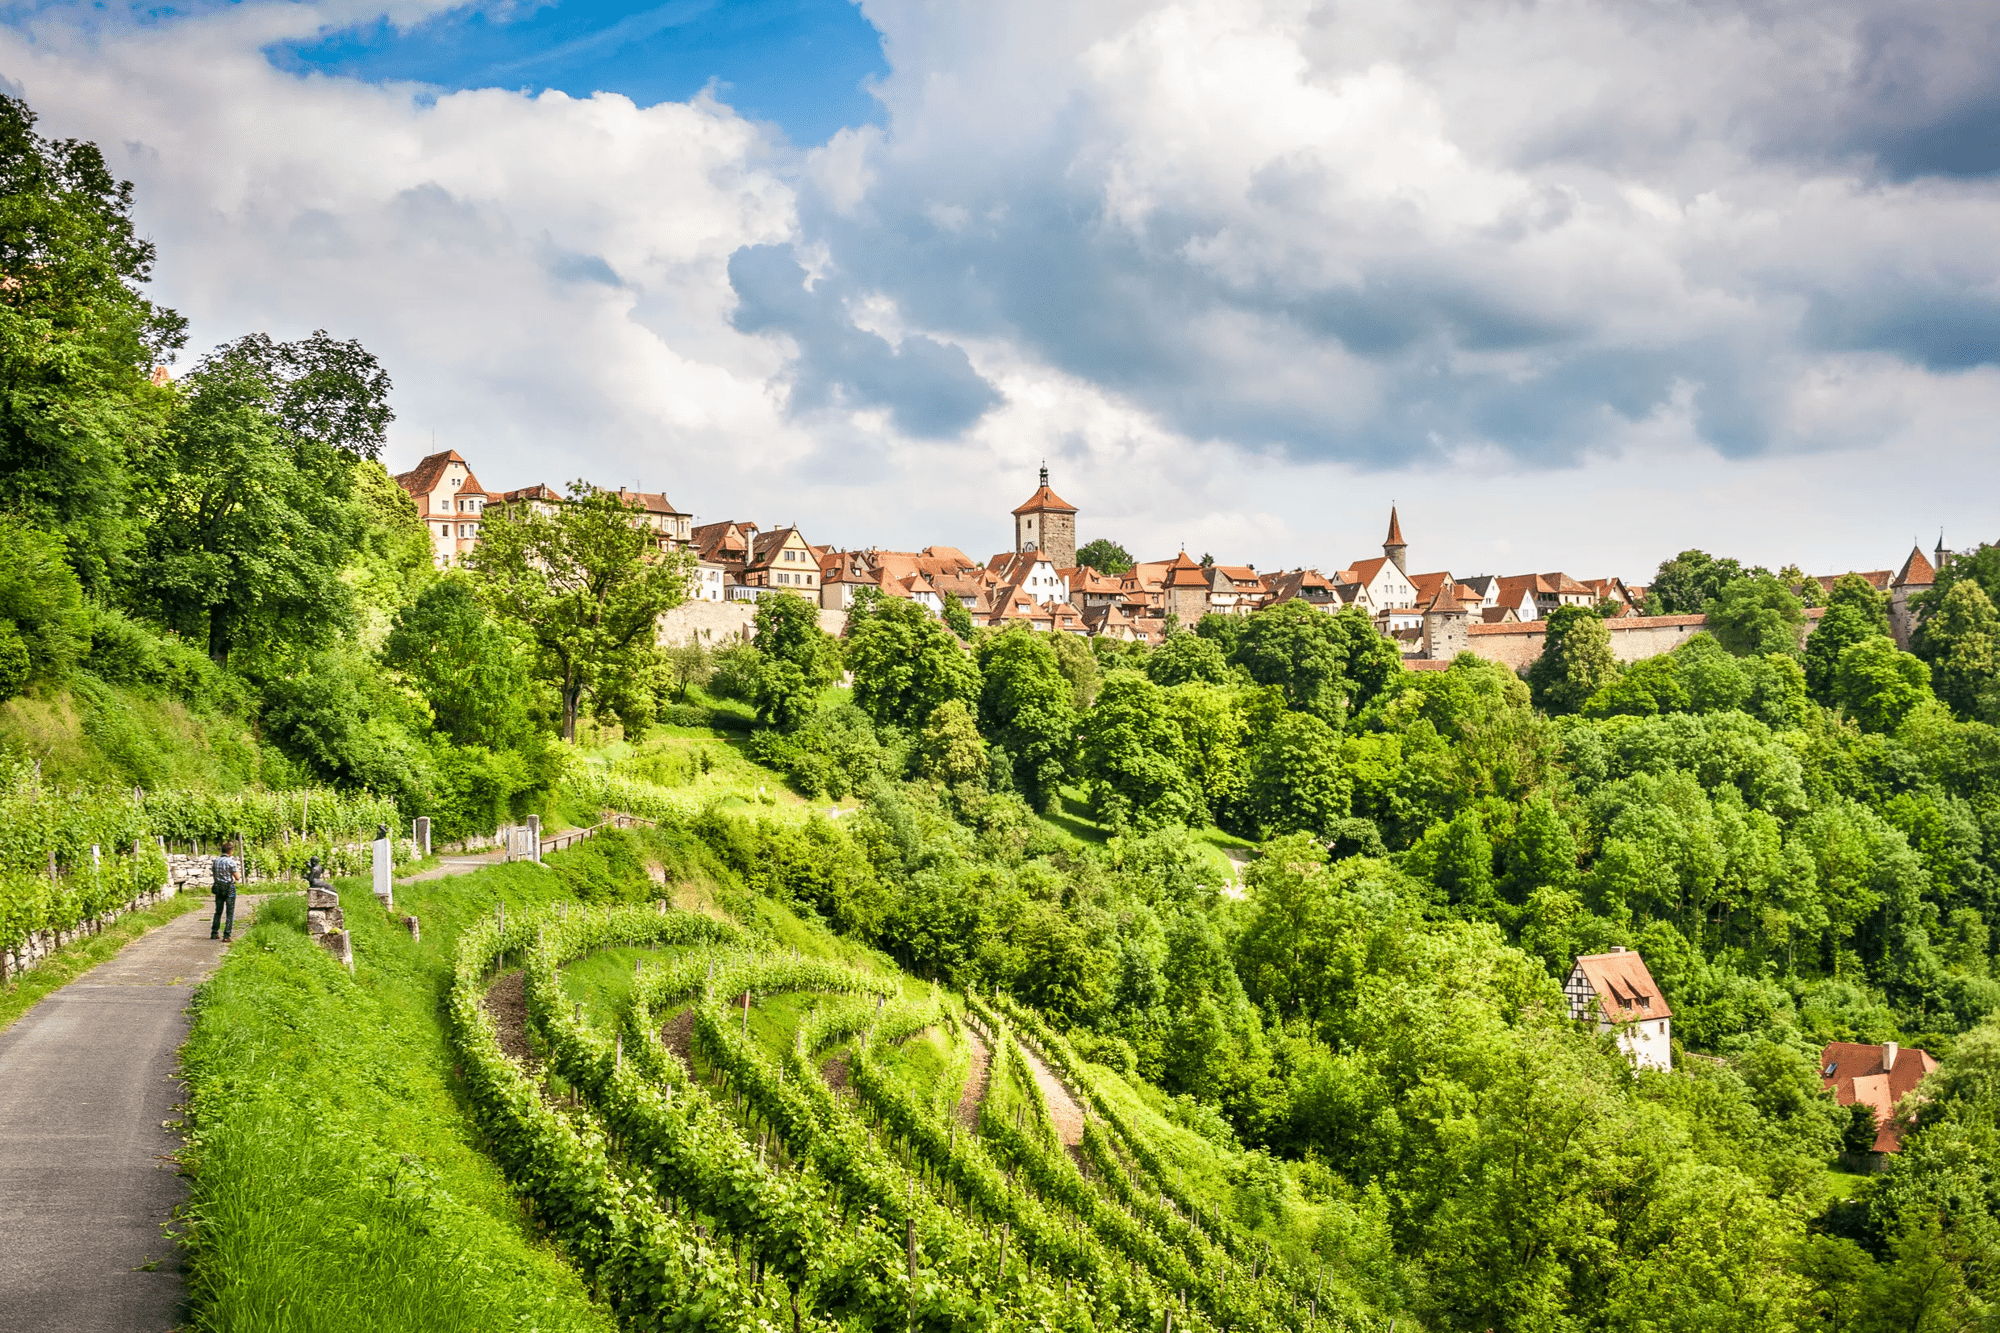 Rondreis 8-, 10-daagse rondreis Beieren - Droomstadjes en wijngaarden in Diversen (Duitsland, Duitsland)